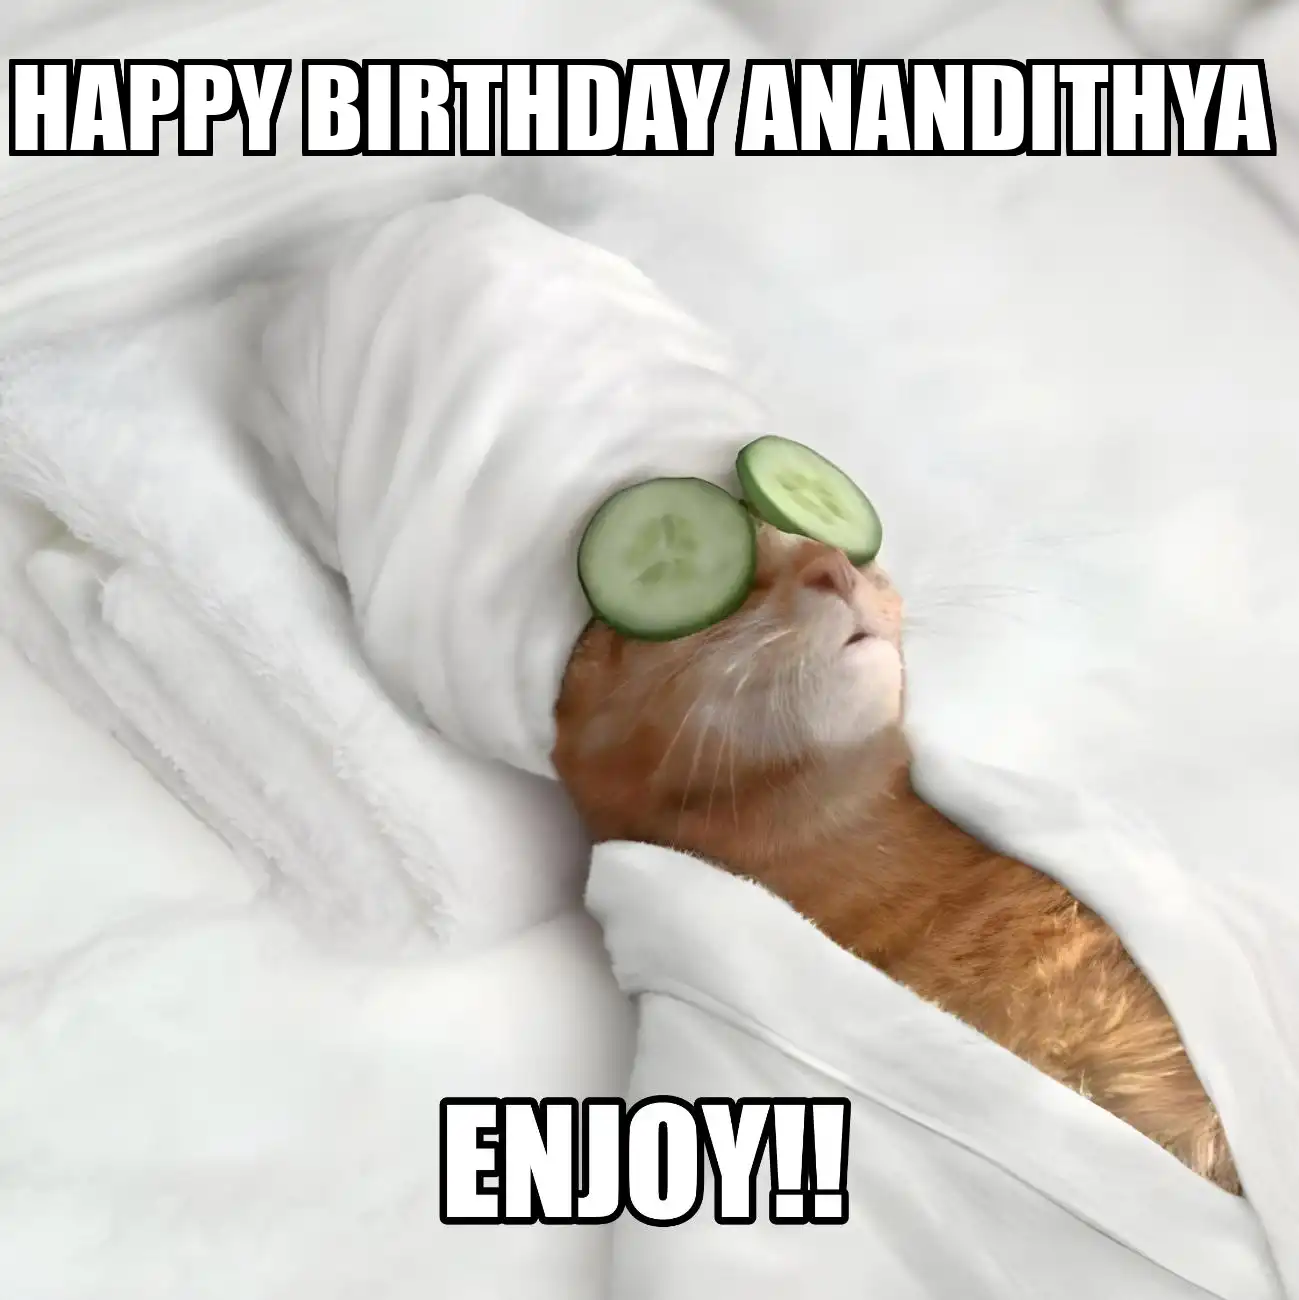 Happy Birthday Anandithya Enjoy Cat Meme